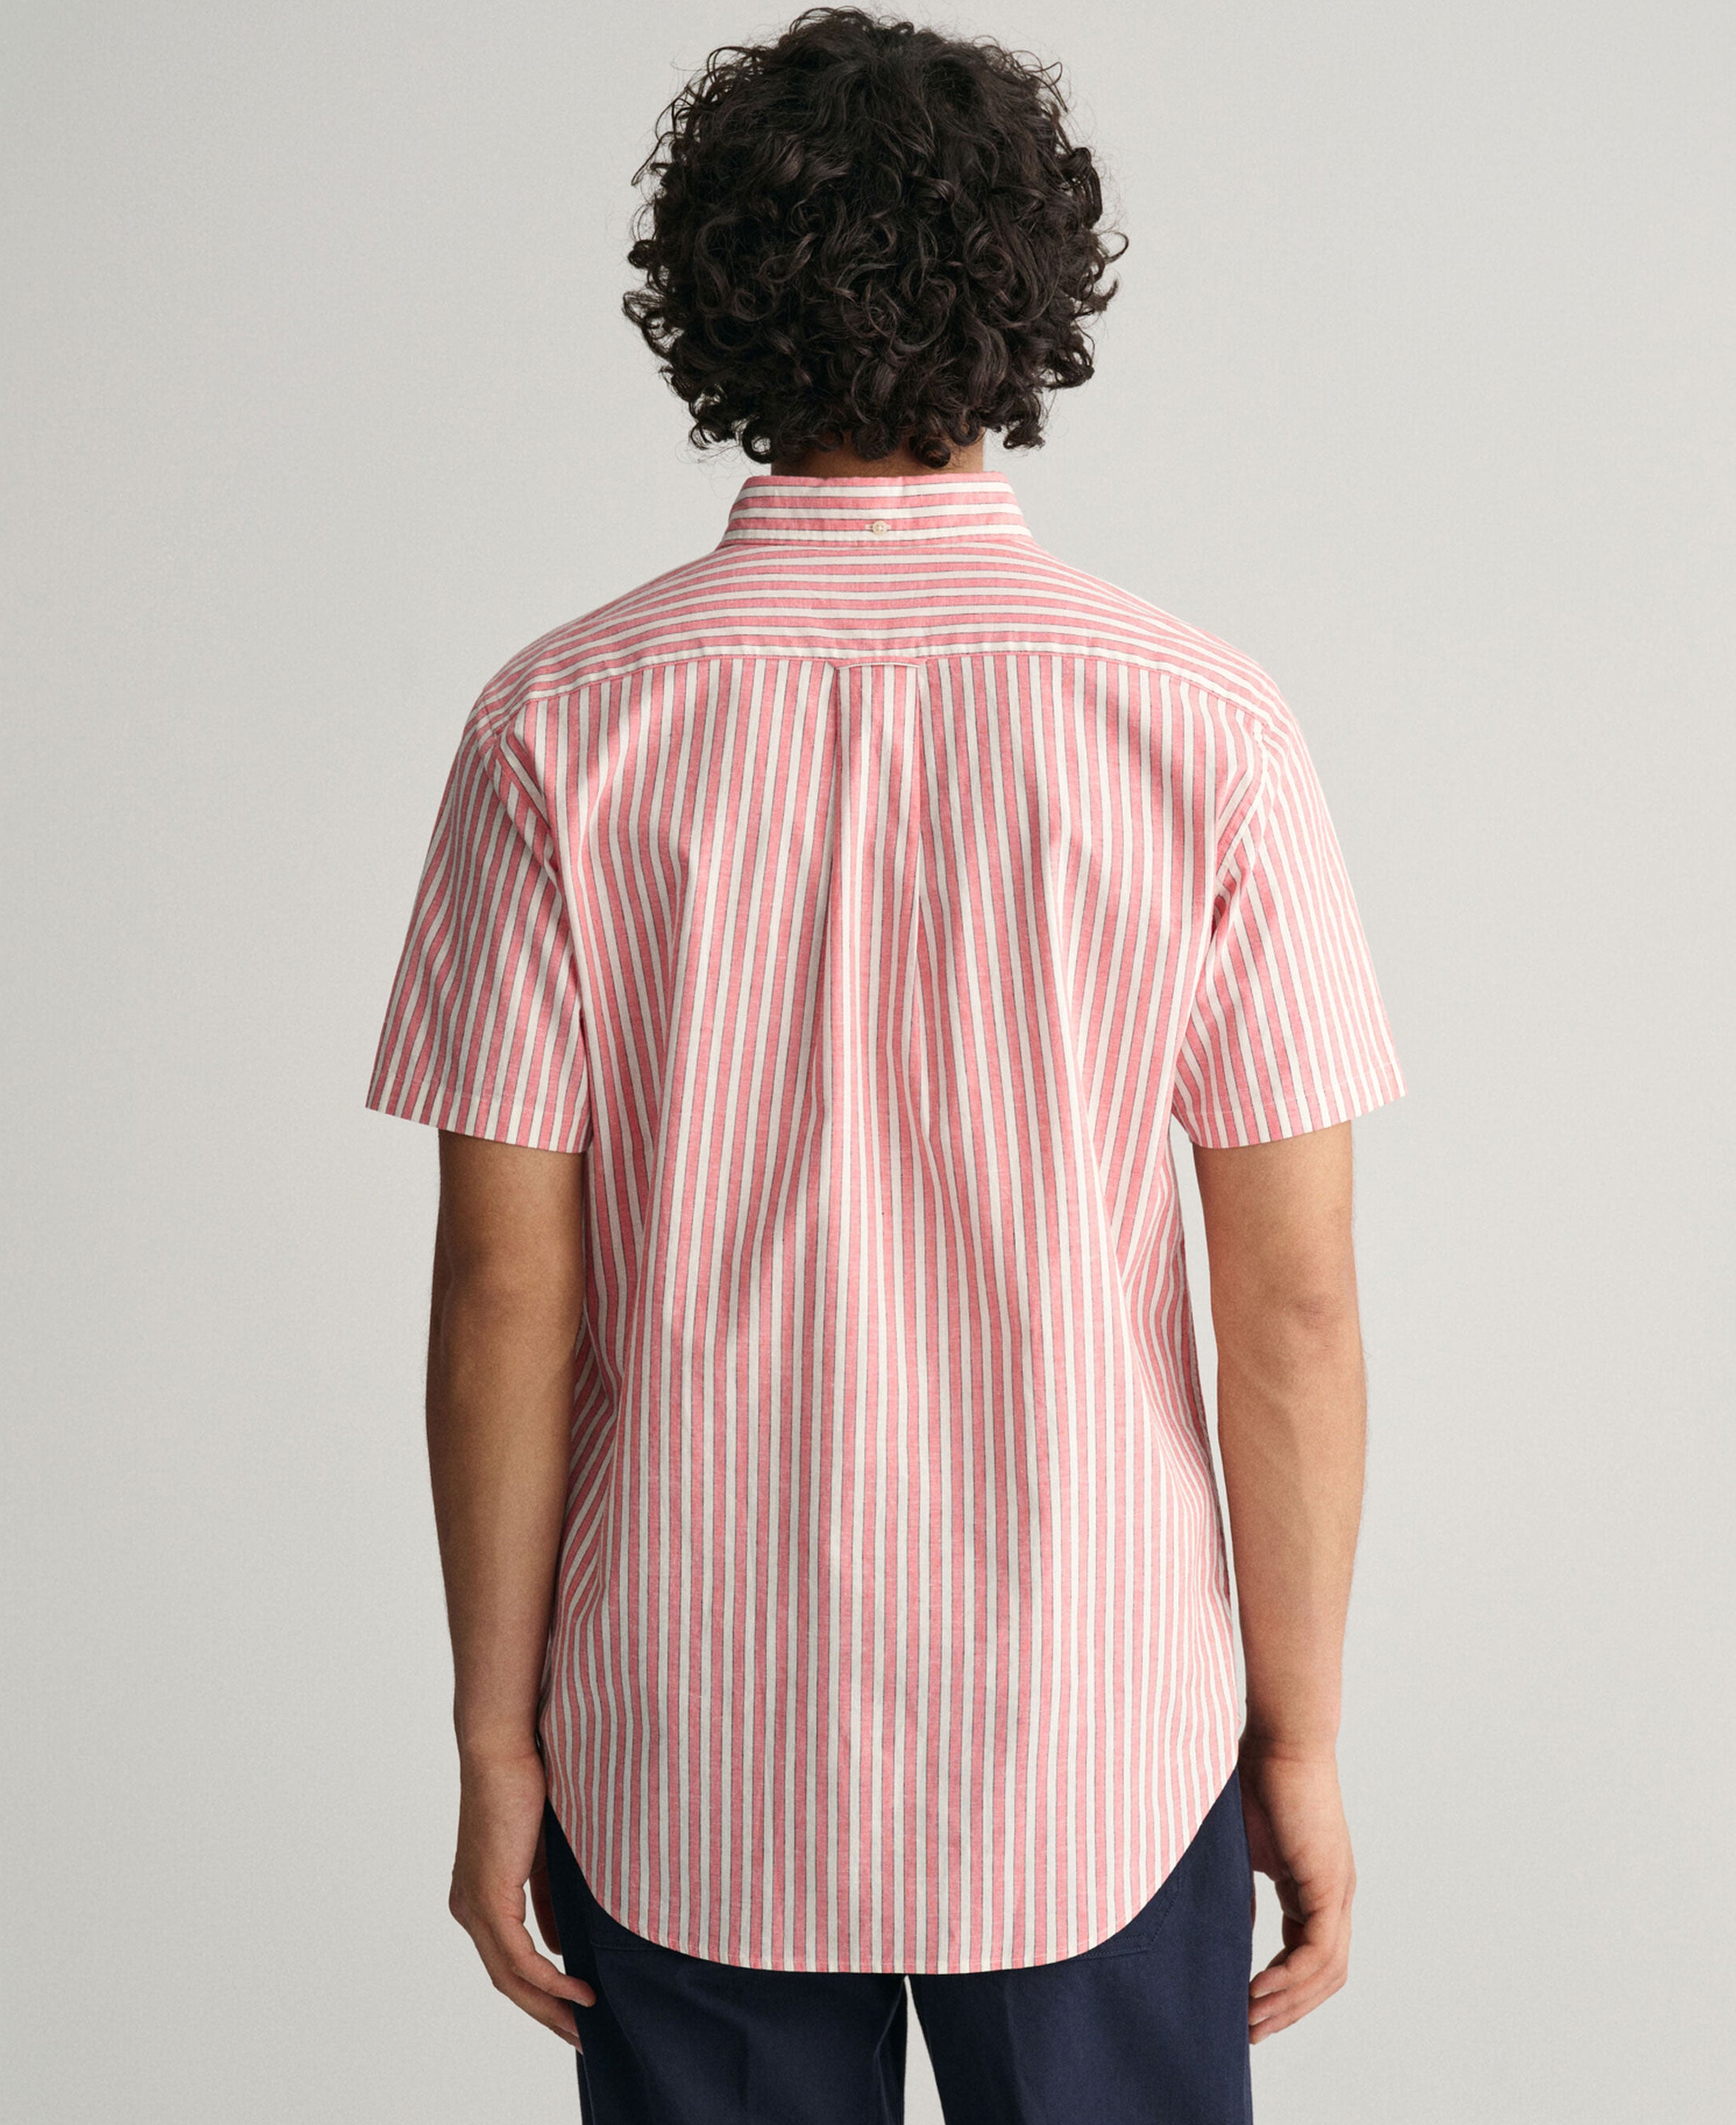 Regular Fit Striped Short Sleeve Shirt - Sunset Pink